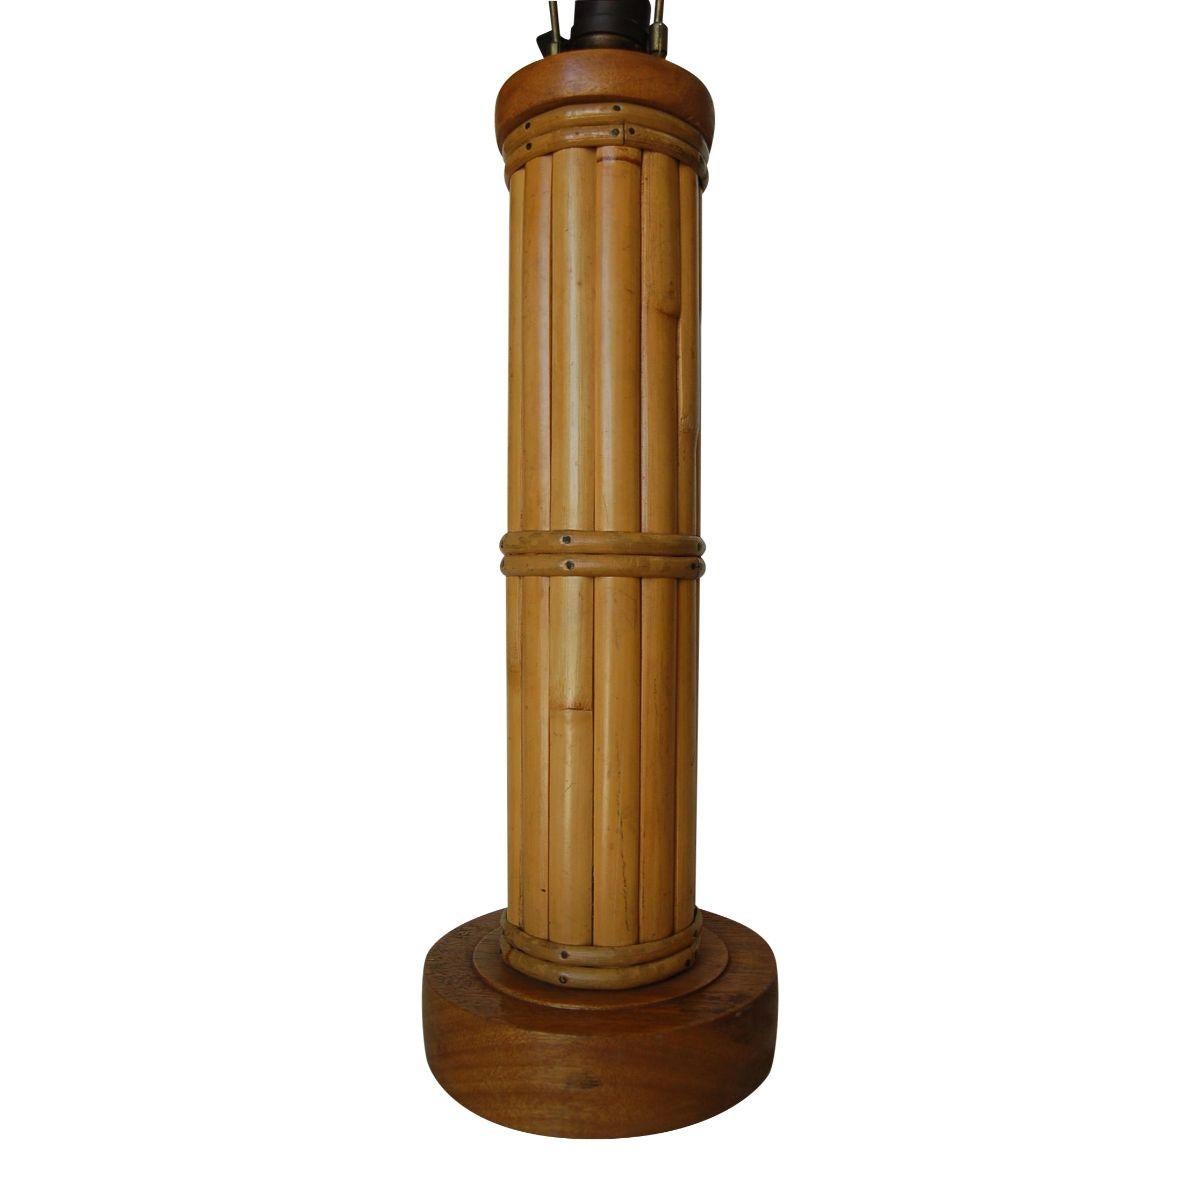 Lampe de table ronde en rotin restaurée, datant du milieu du siècle, composée de treize tiges décoratives en rotin centrées autour d'un poteau en rotin, le tout fixé à une base circulaire en bois avec des enveloppes fantaisistes.
Mesure 4